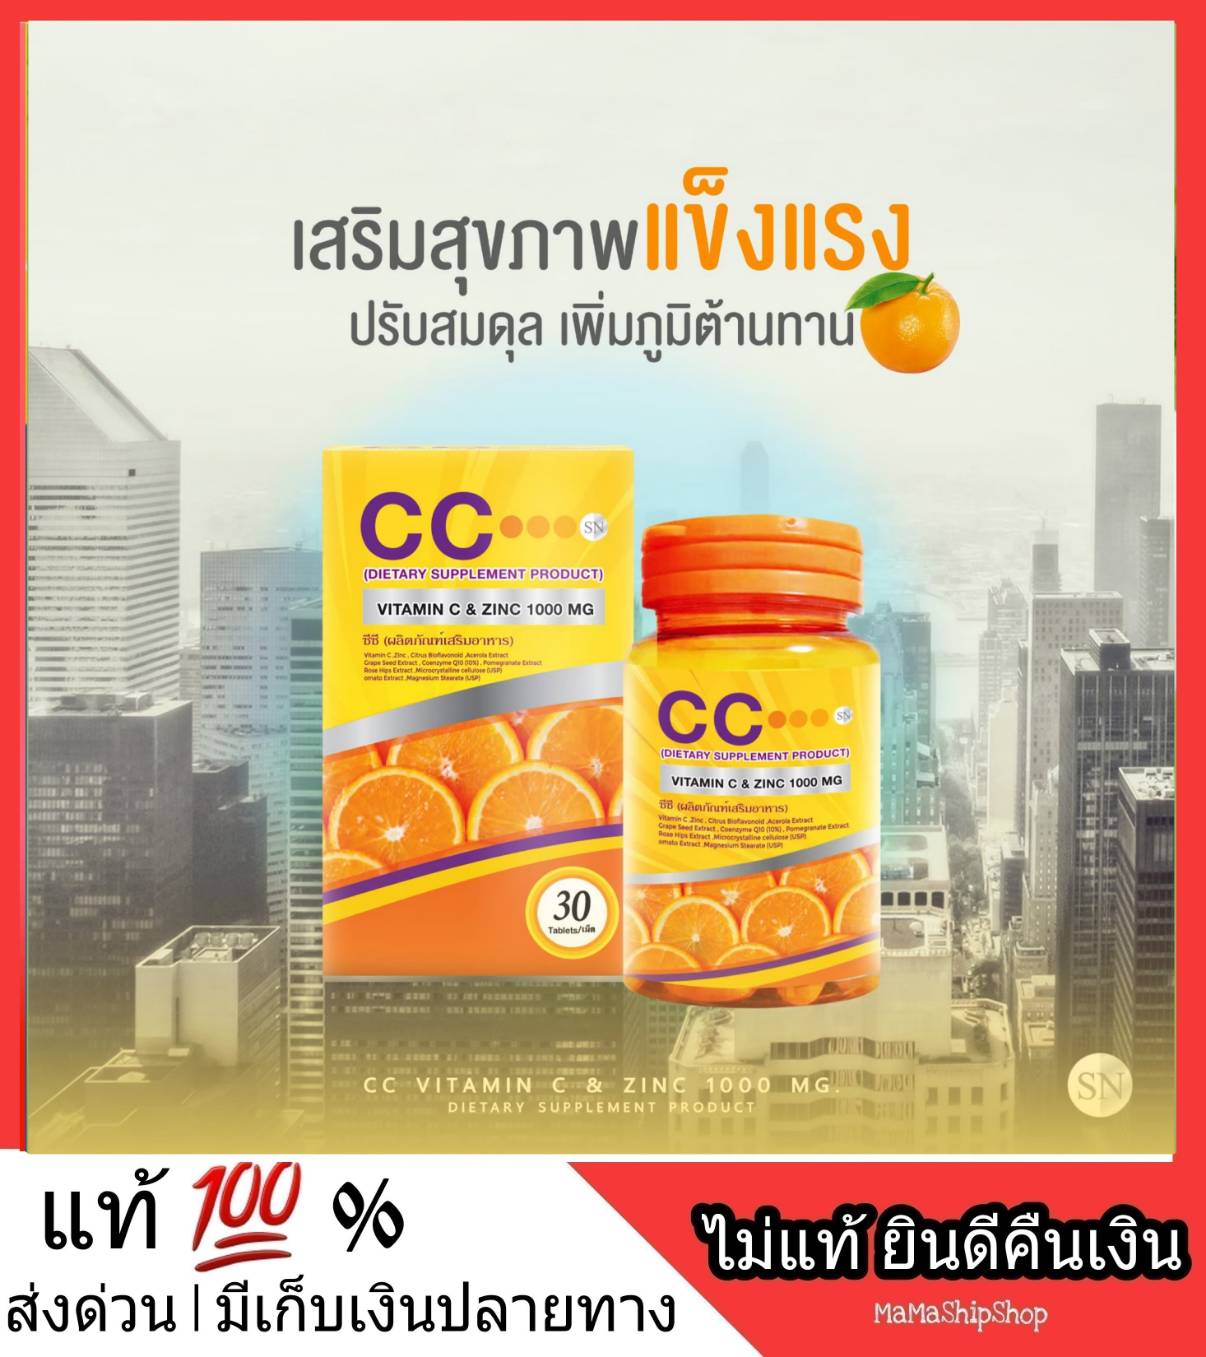 CC Vitamin C & Zinc 1000 mg วิตซี วิตามินซี วิตตามินซี เข้มข้น หวัด ภูมิแพ้ ขนาด 30 เม็ด Bio C ไบโอซี ส่งฟรี พร้อมส่ง